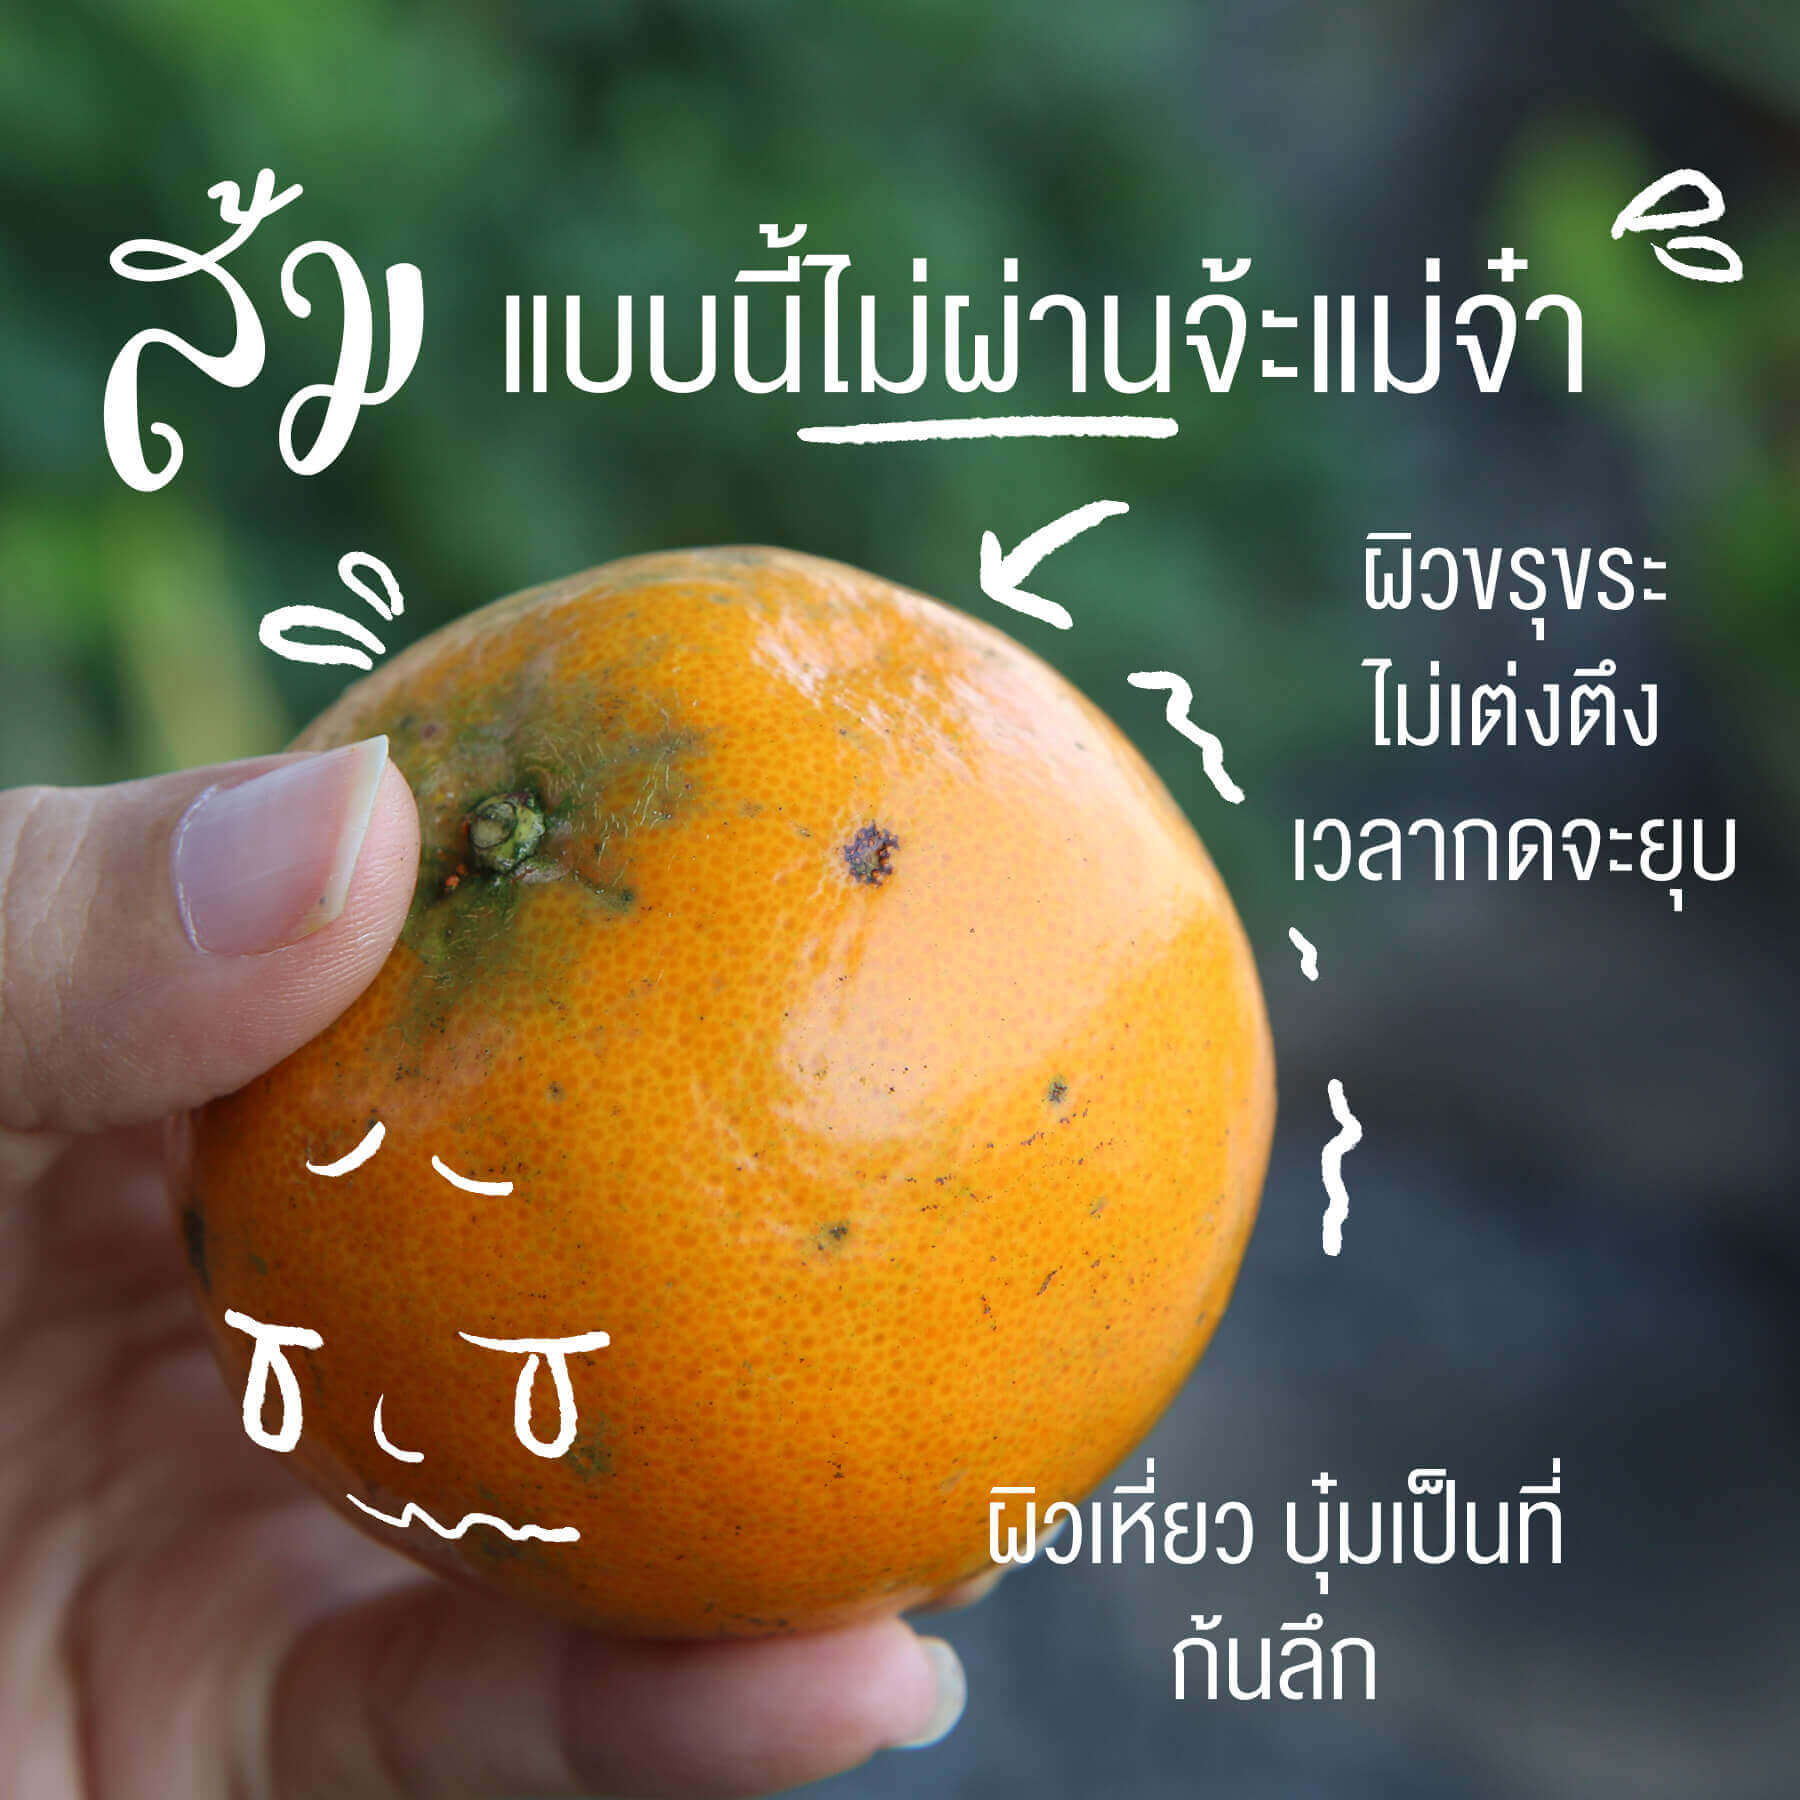 เลือกส้มยังไงให้หวานฉ่ำ, ส้มลูกหวานๆ, วิธีเลือกส้ม, ส้มเปรี้ยว 